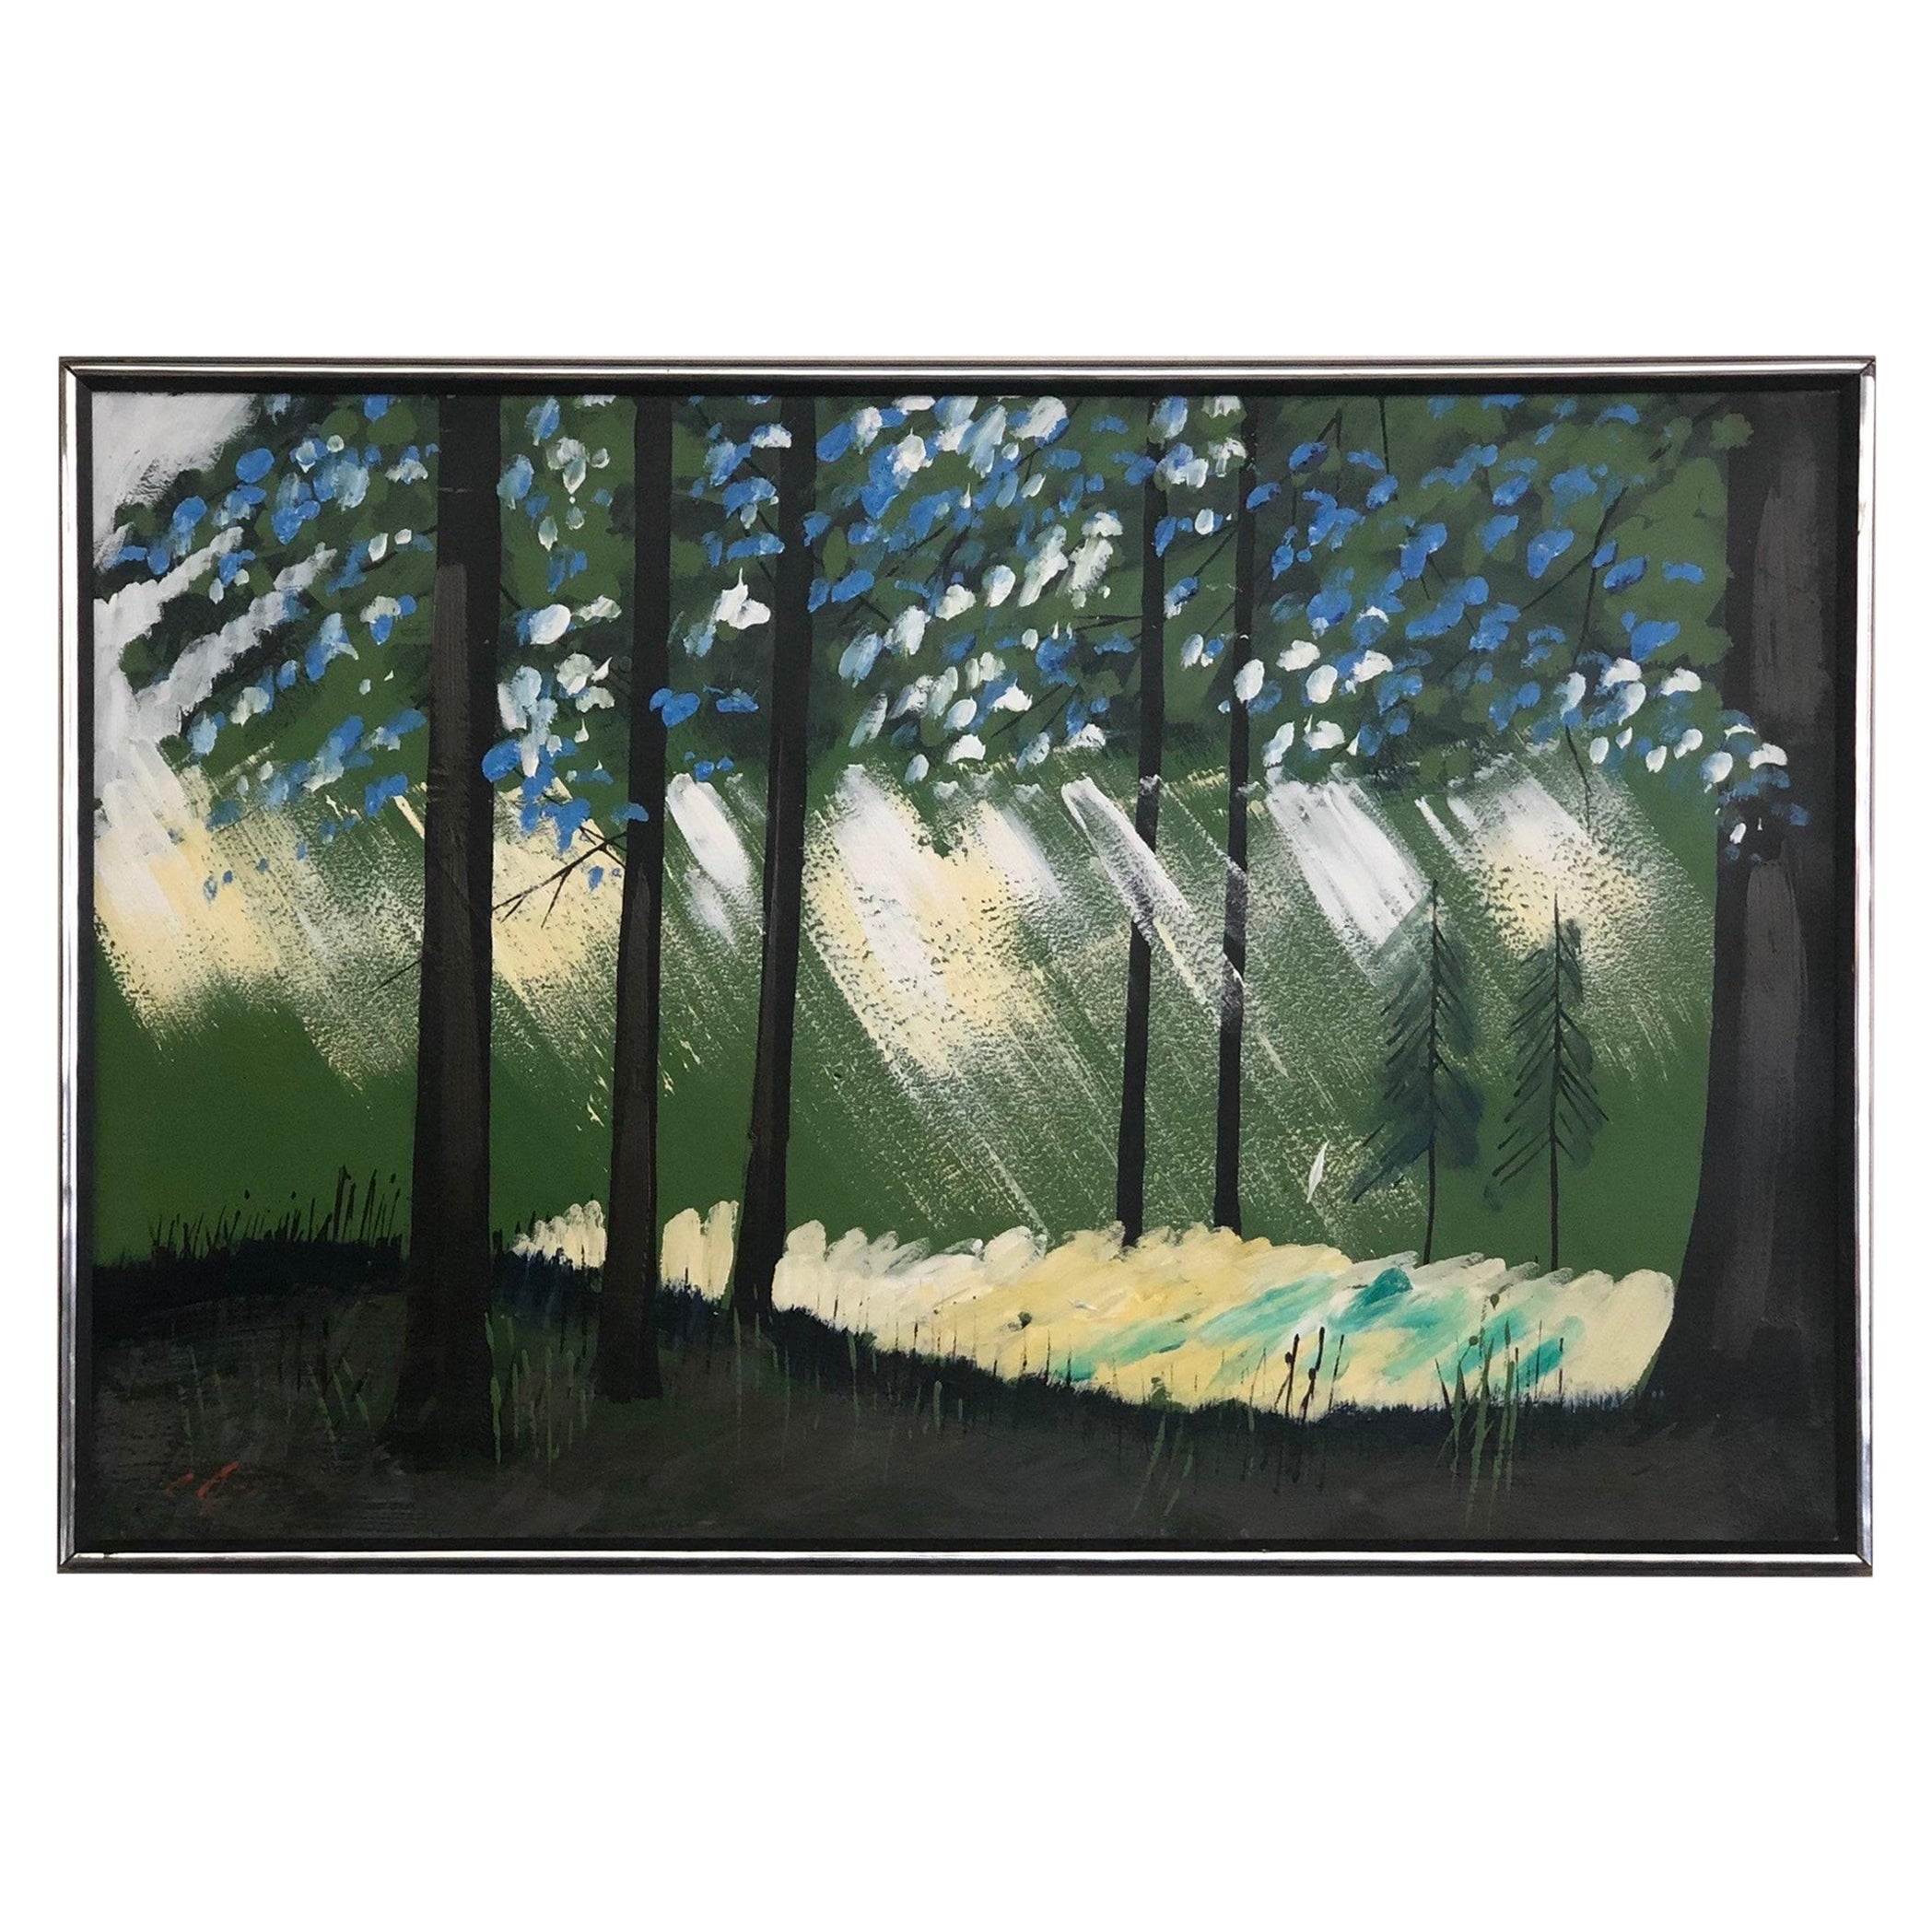 Vieille peinture abstraite de style MCM moderne du milieu du siècle dernier encadrée en forme de forêt, signée